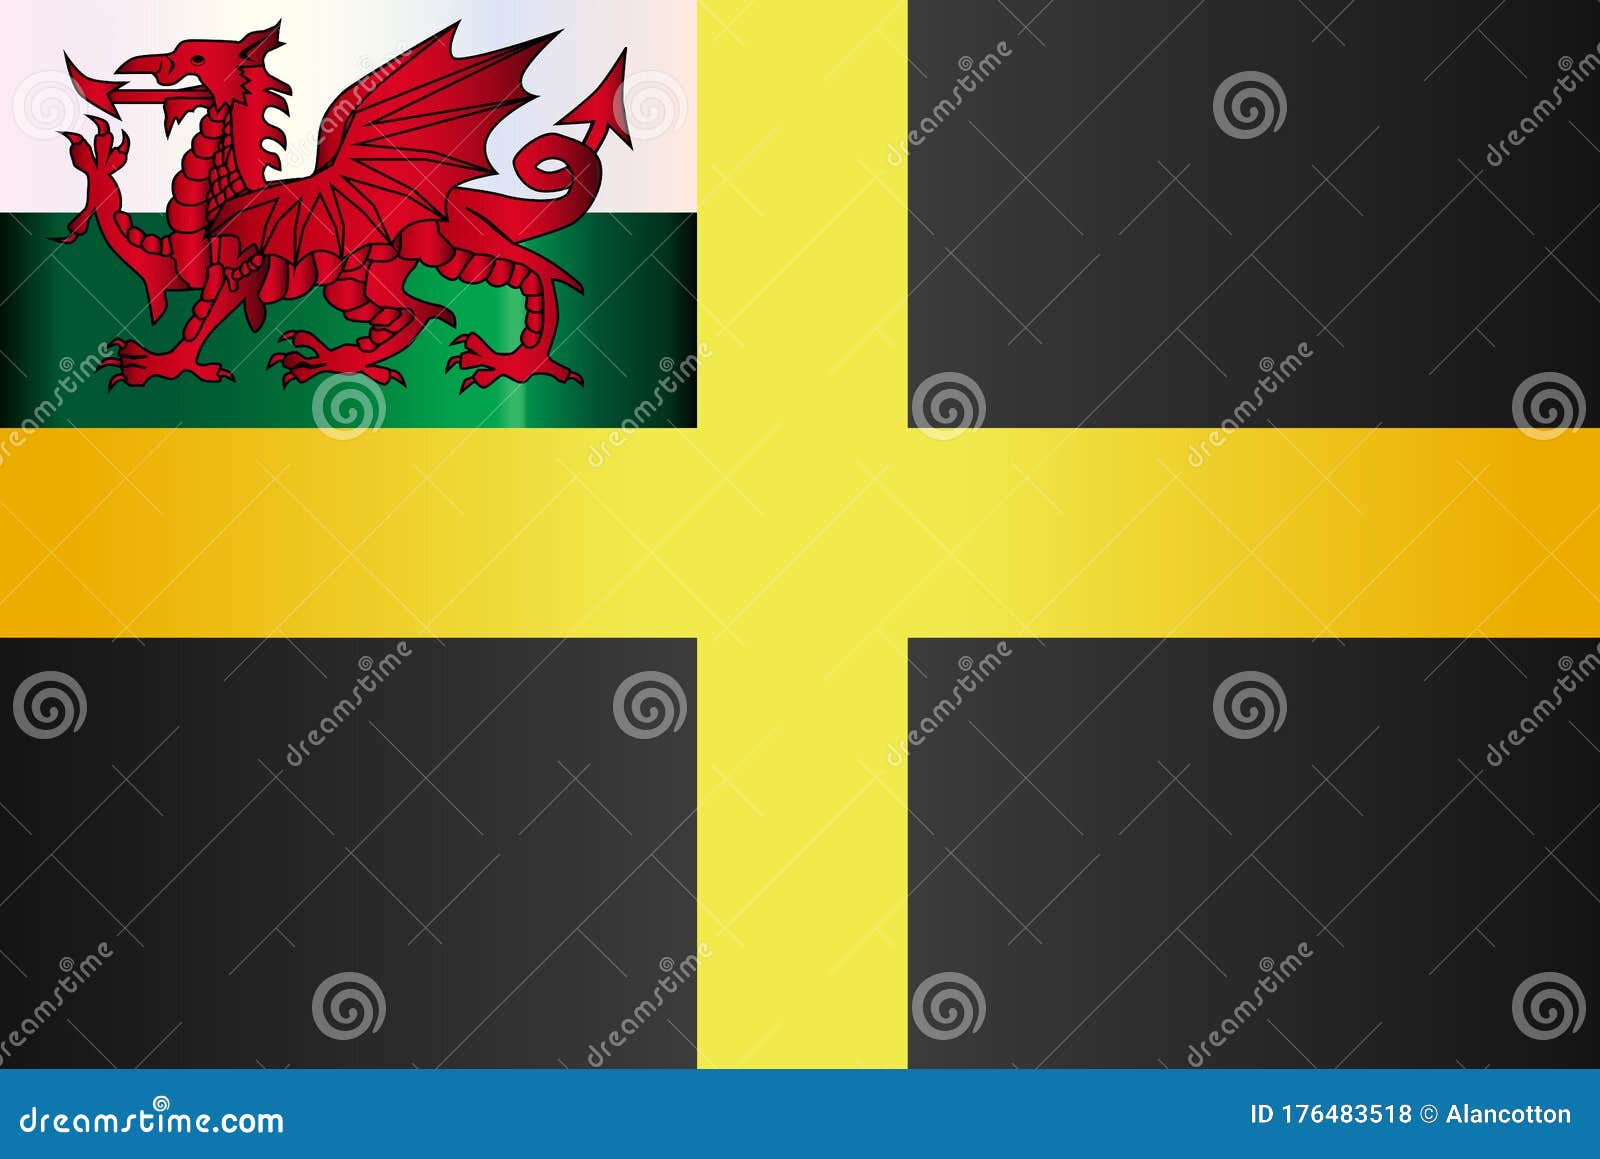 Vector lá cờ thánh David của Wales chính là những tác phẩm nghệ thuật sống động với đầy cảm hứng sáng tạo. Hãy thử bấm vào hình ảnh để khám phá thế giới sắc màu tuyệt đẹp của đất nước xứ Wales và lá cờ đặc trưng của họ.